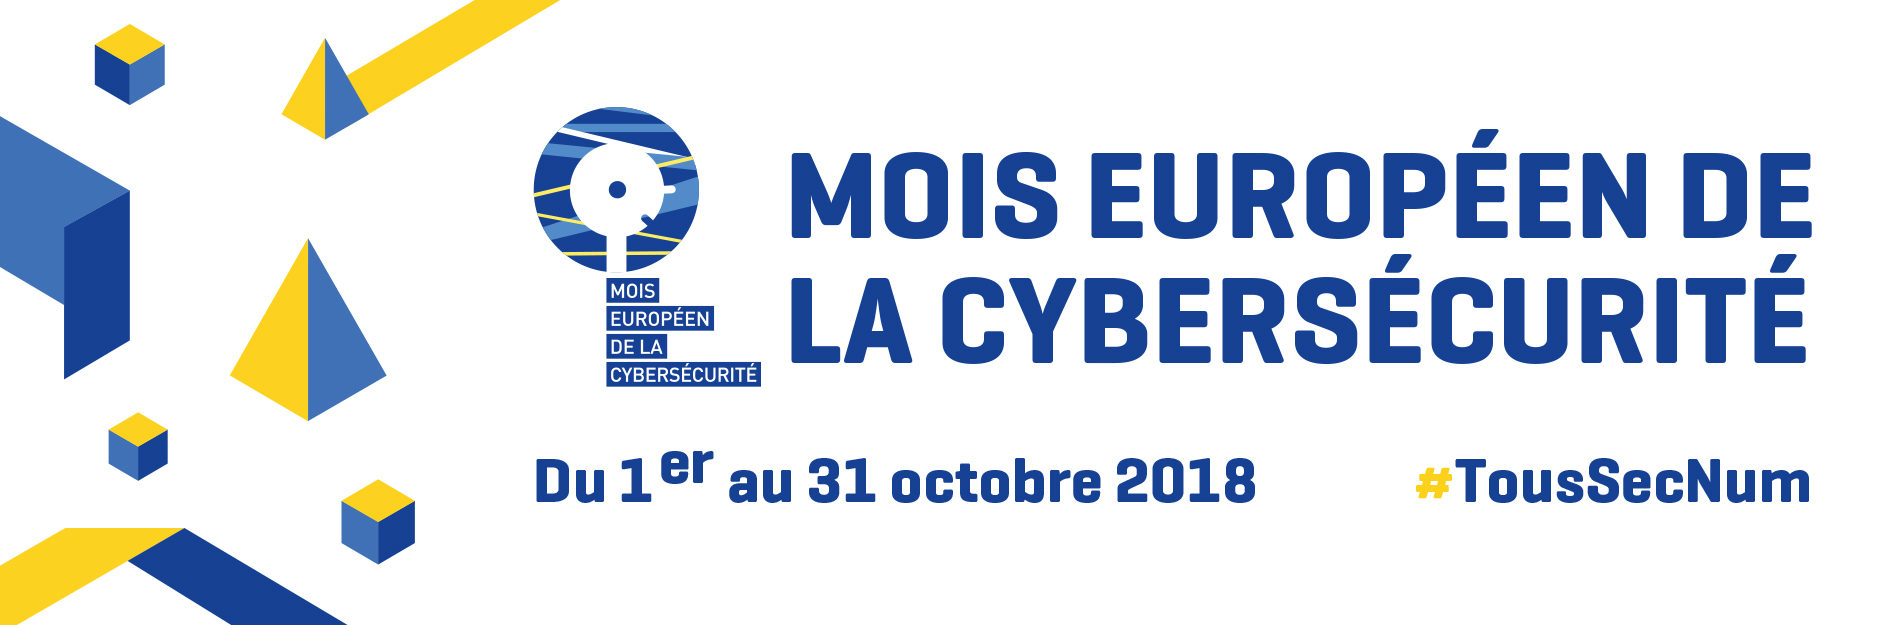 Mois européen de la Cybersécurité